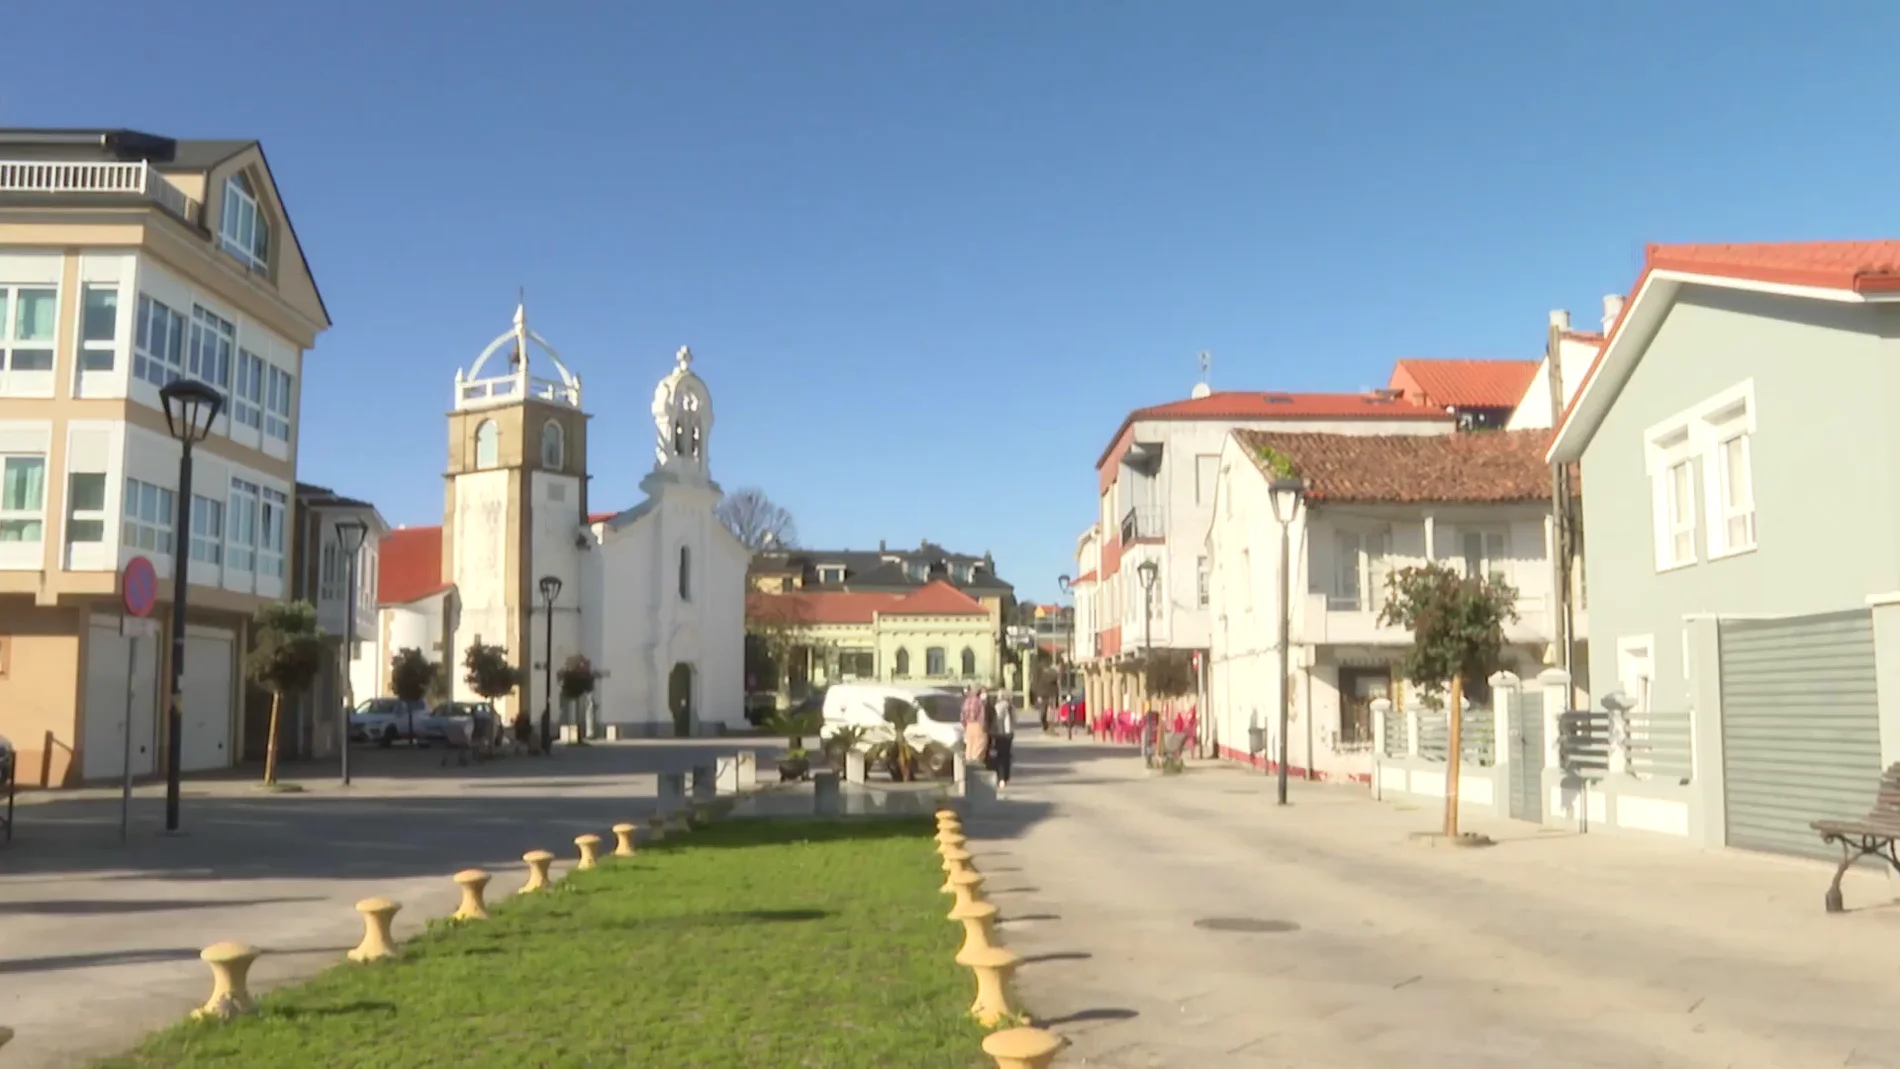 Un vecino de Ares denuncia al Ayuntamiento por el sonido de las campanadas del reloj municipal